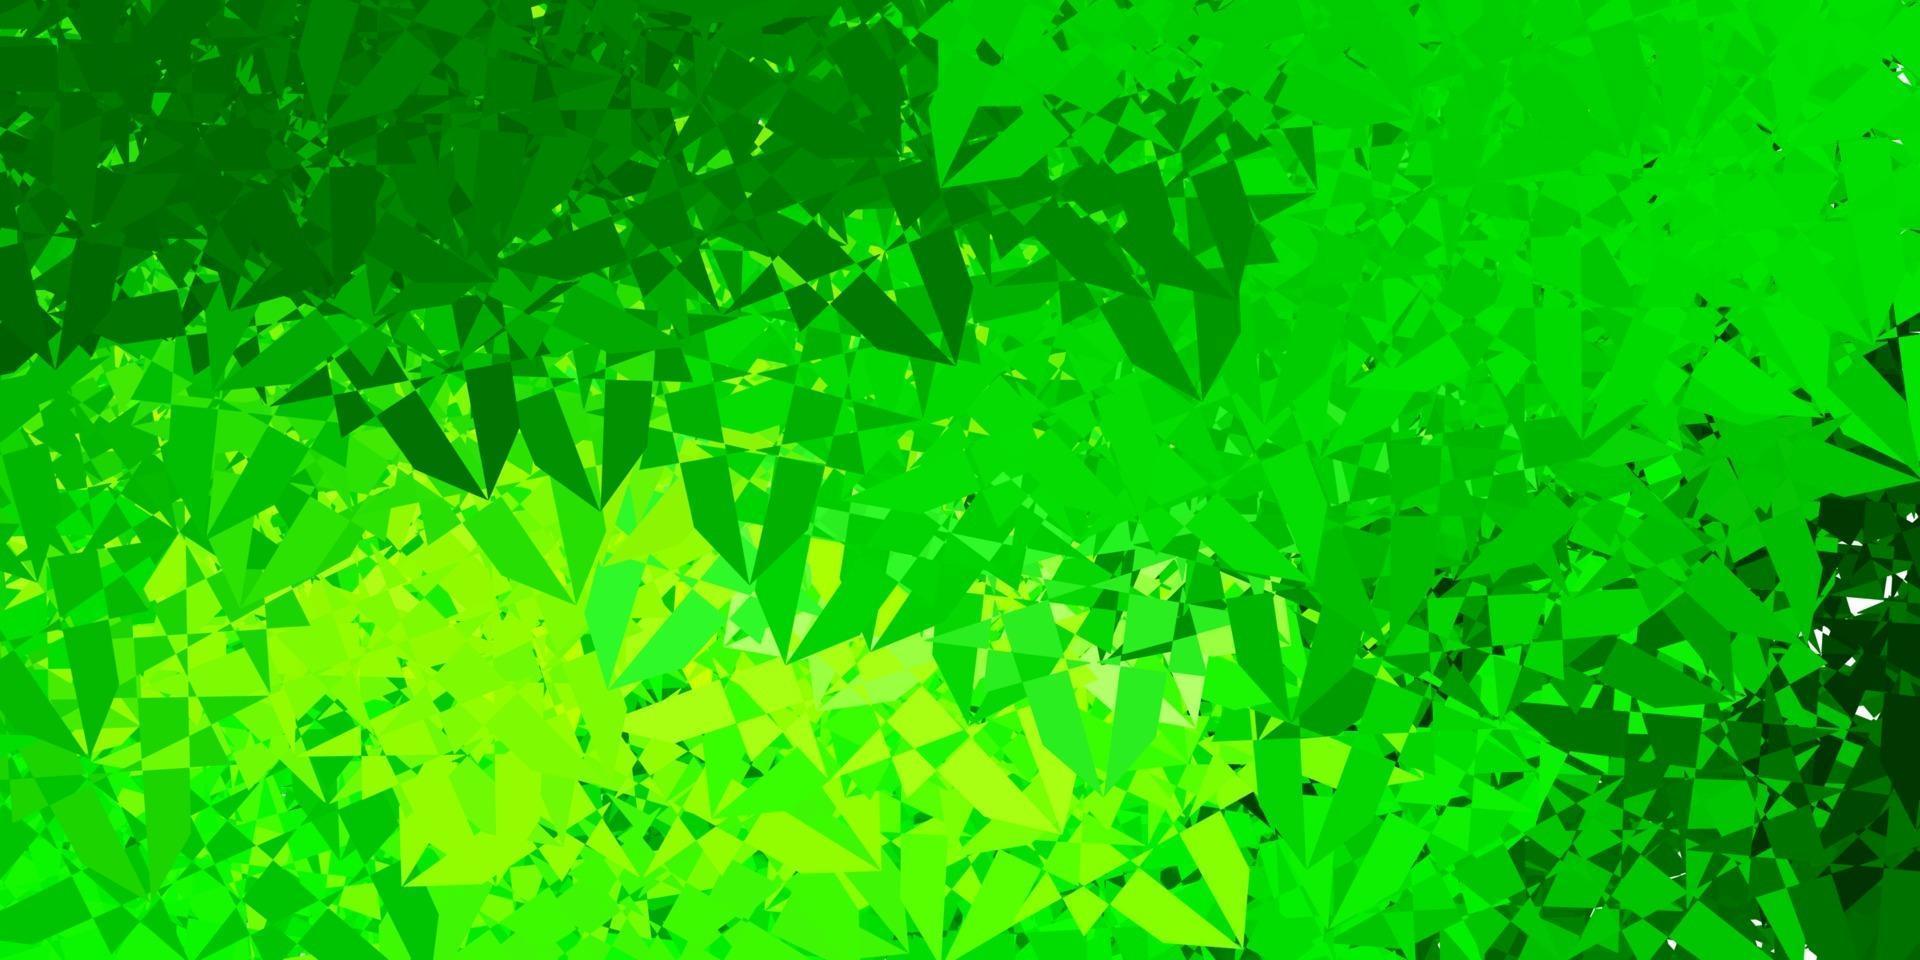 patrón de vector verde claro, amarillo con formas poligonales.